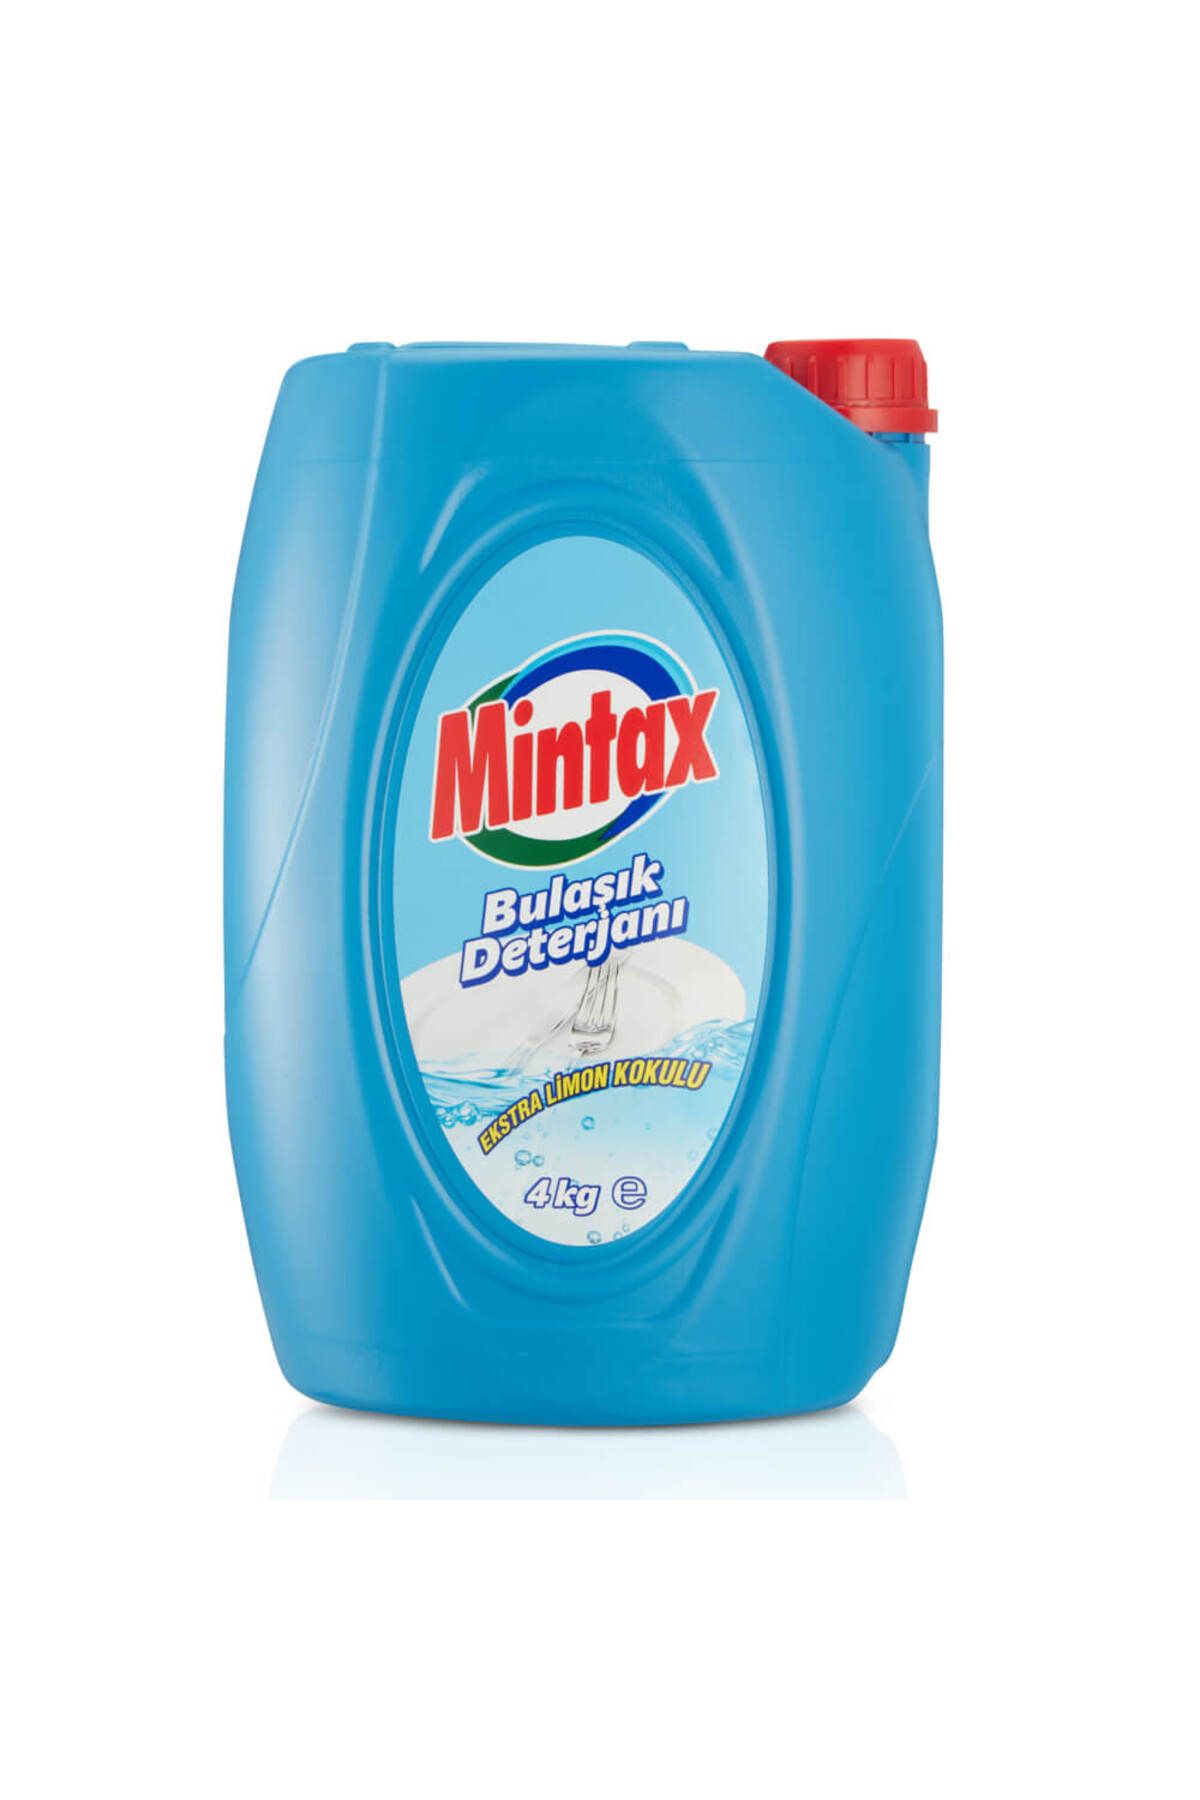 Mintax Bulaşık Deterjanı 4 Kg Ekstra Limon Kokulu